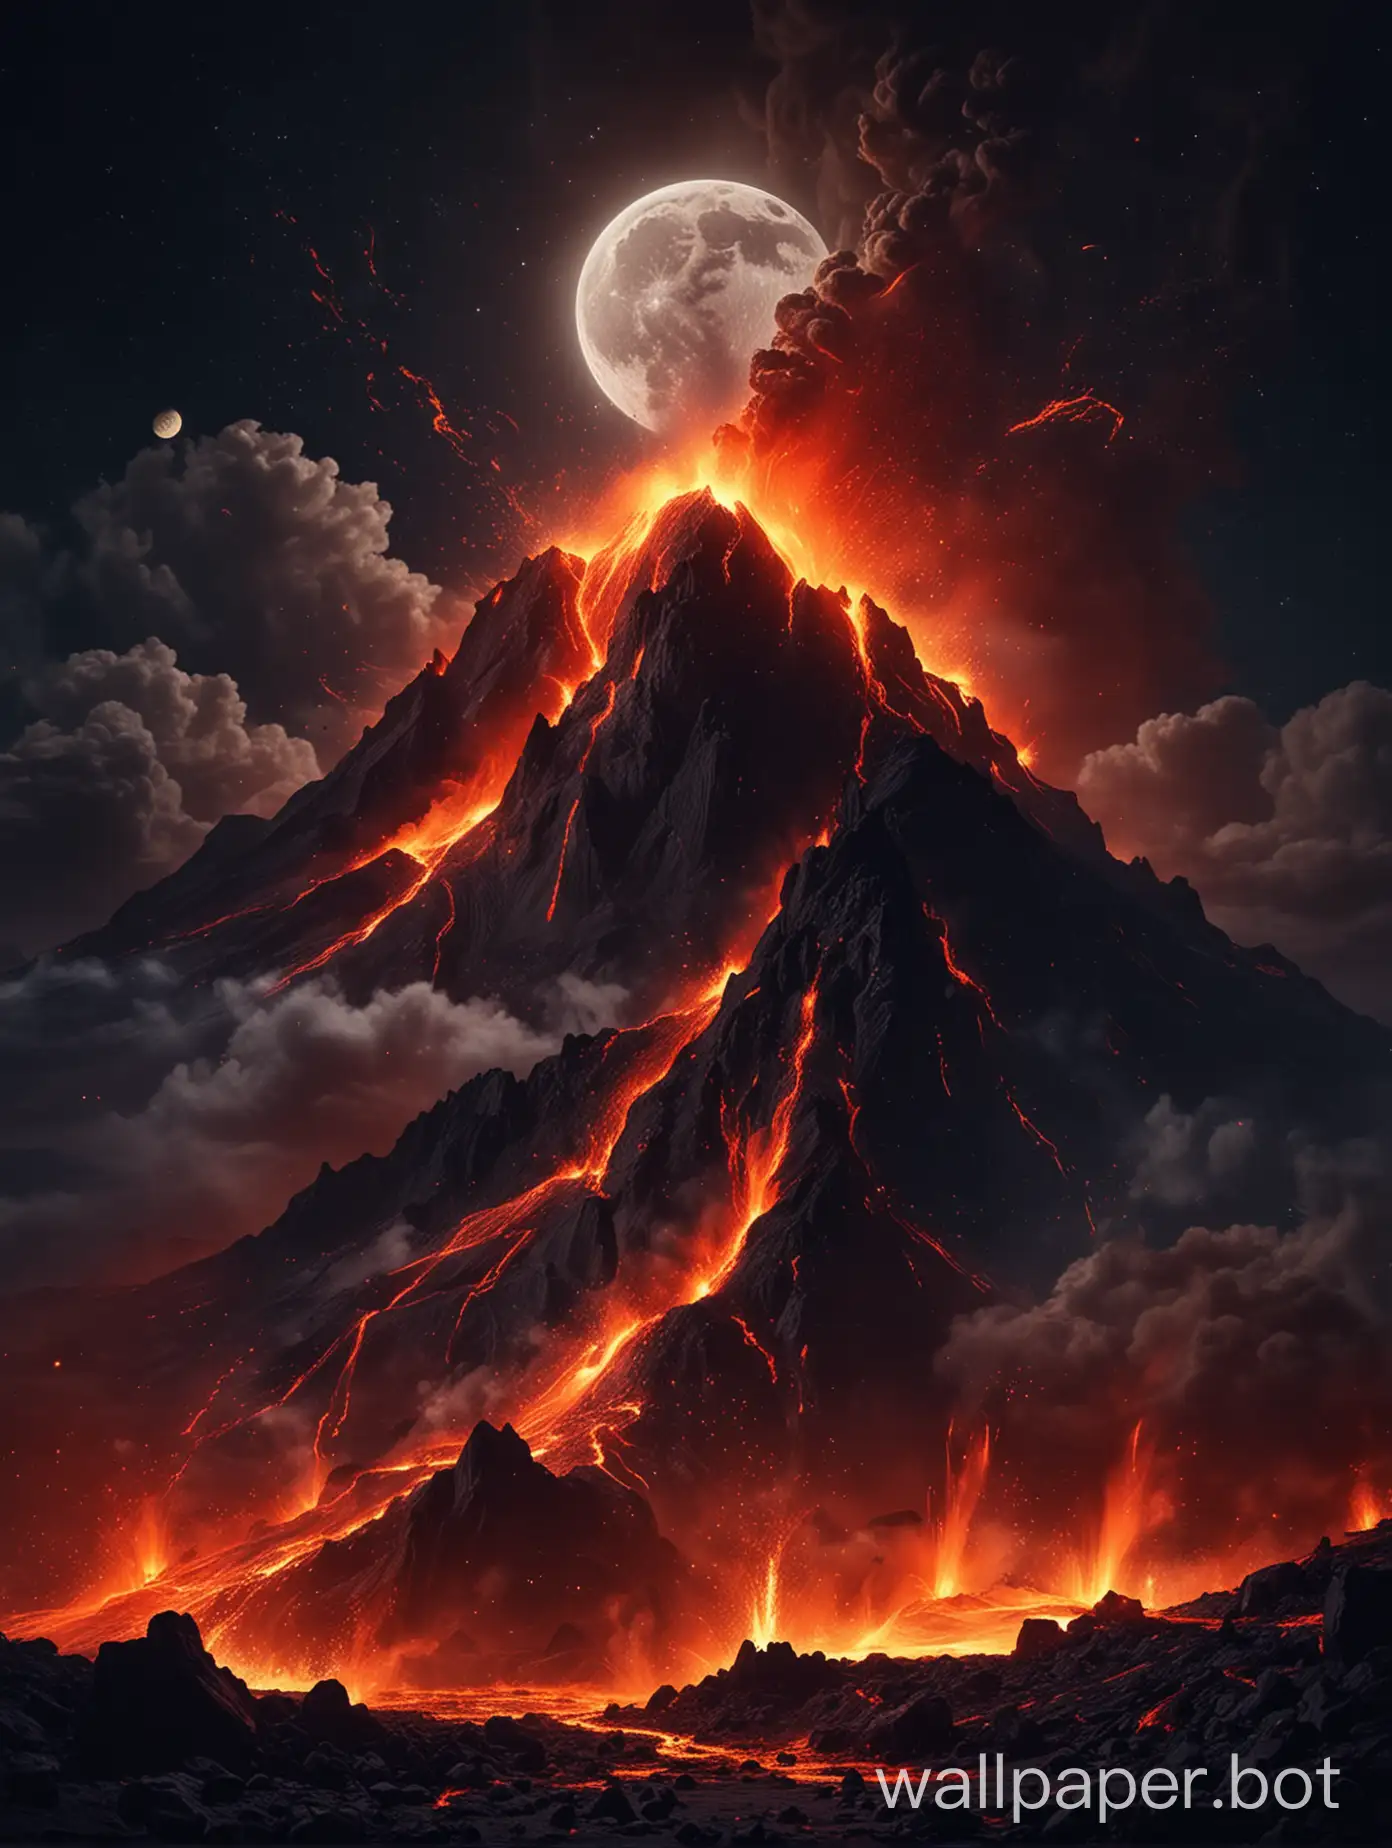 извержение огромного вулкана, лава стекает по склону горы, ярко светит луна, с неба падают огненные кометы